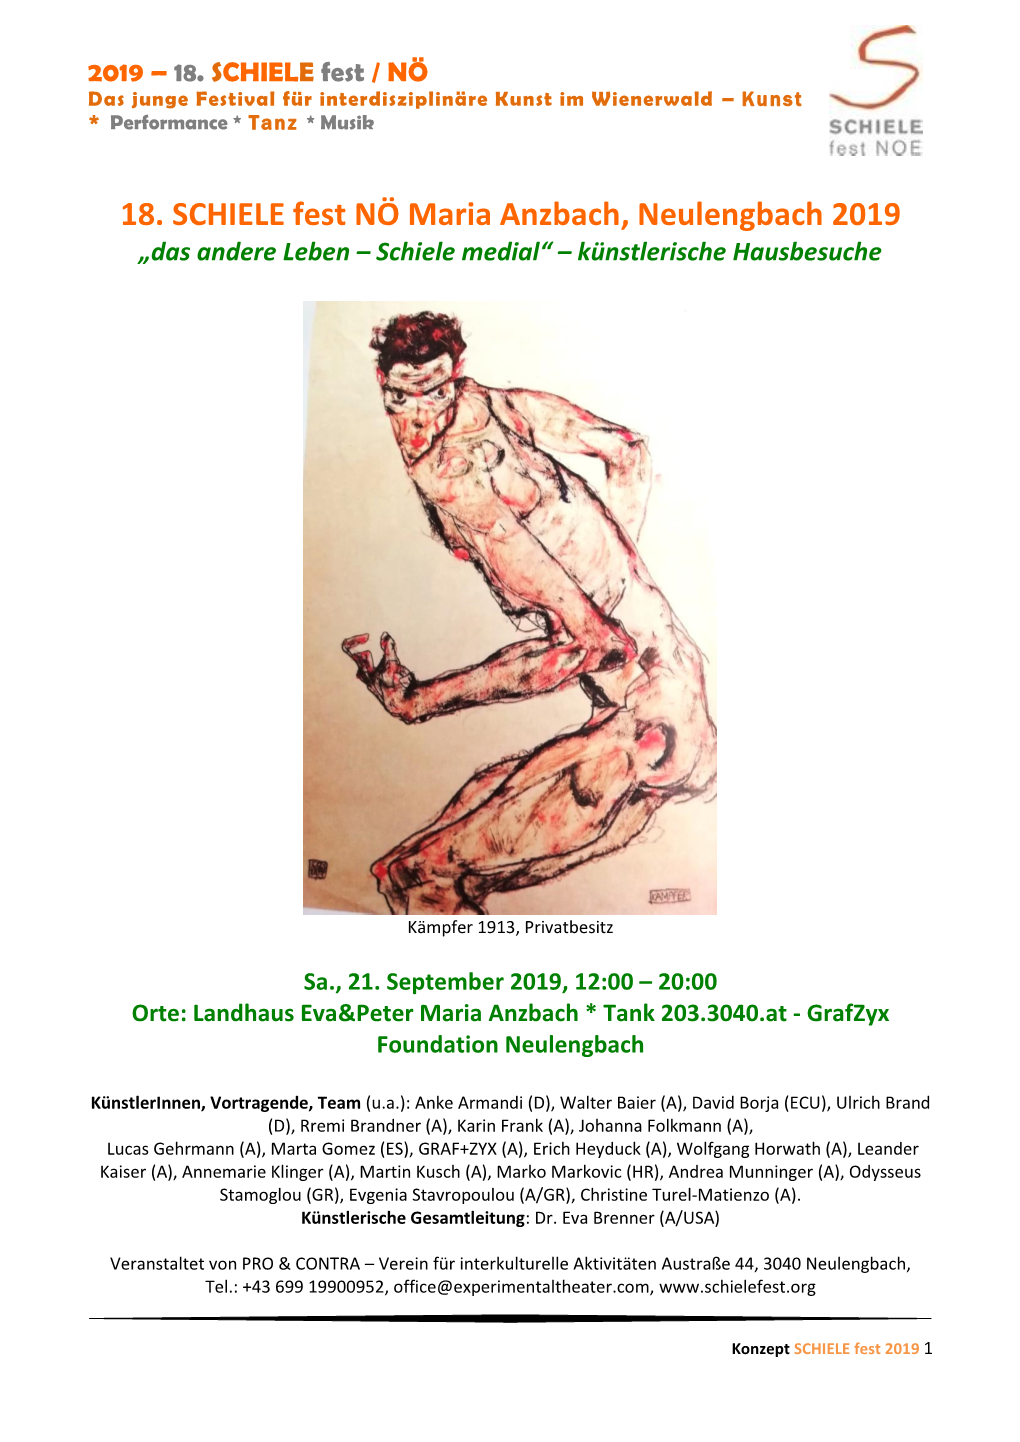 18. SCHIELE Fest NÖ Maria Anzbach, Neulengbach 2019 „Das Andere Leben – Schiele Medial“ – Künstlerische Hausbesuche